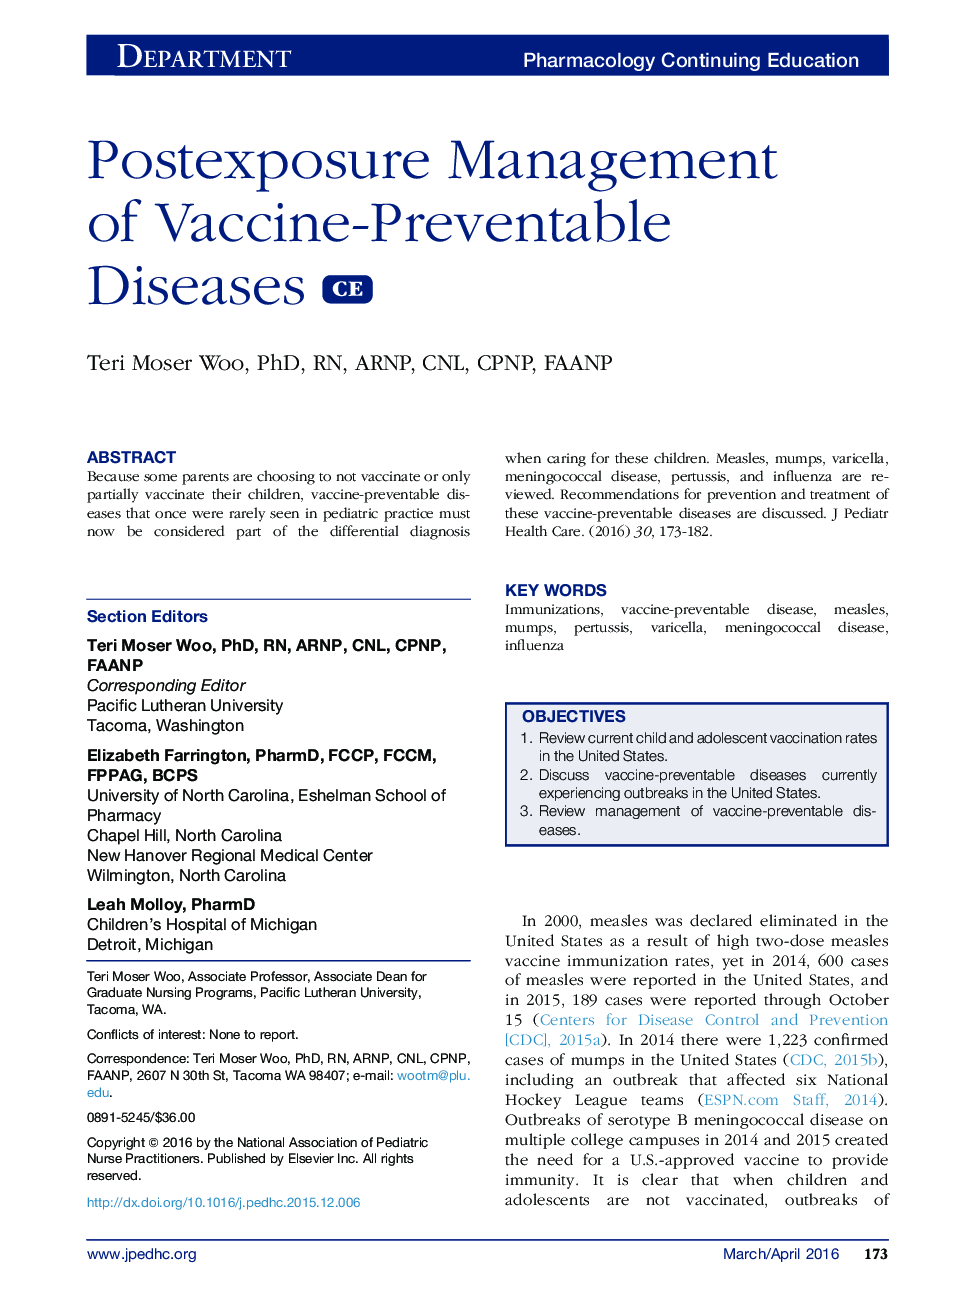 مدیریت پس از مواجهه با بیماری های قابل پیشگیری با واکسن